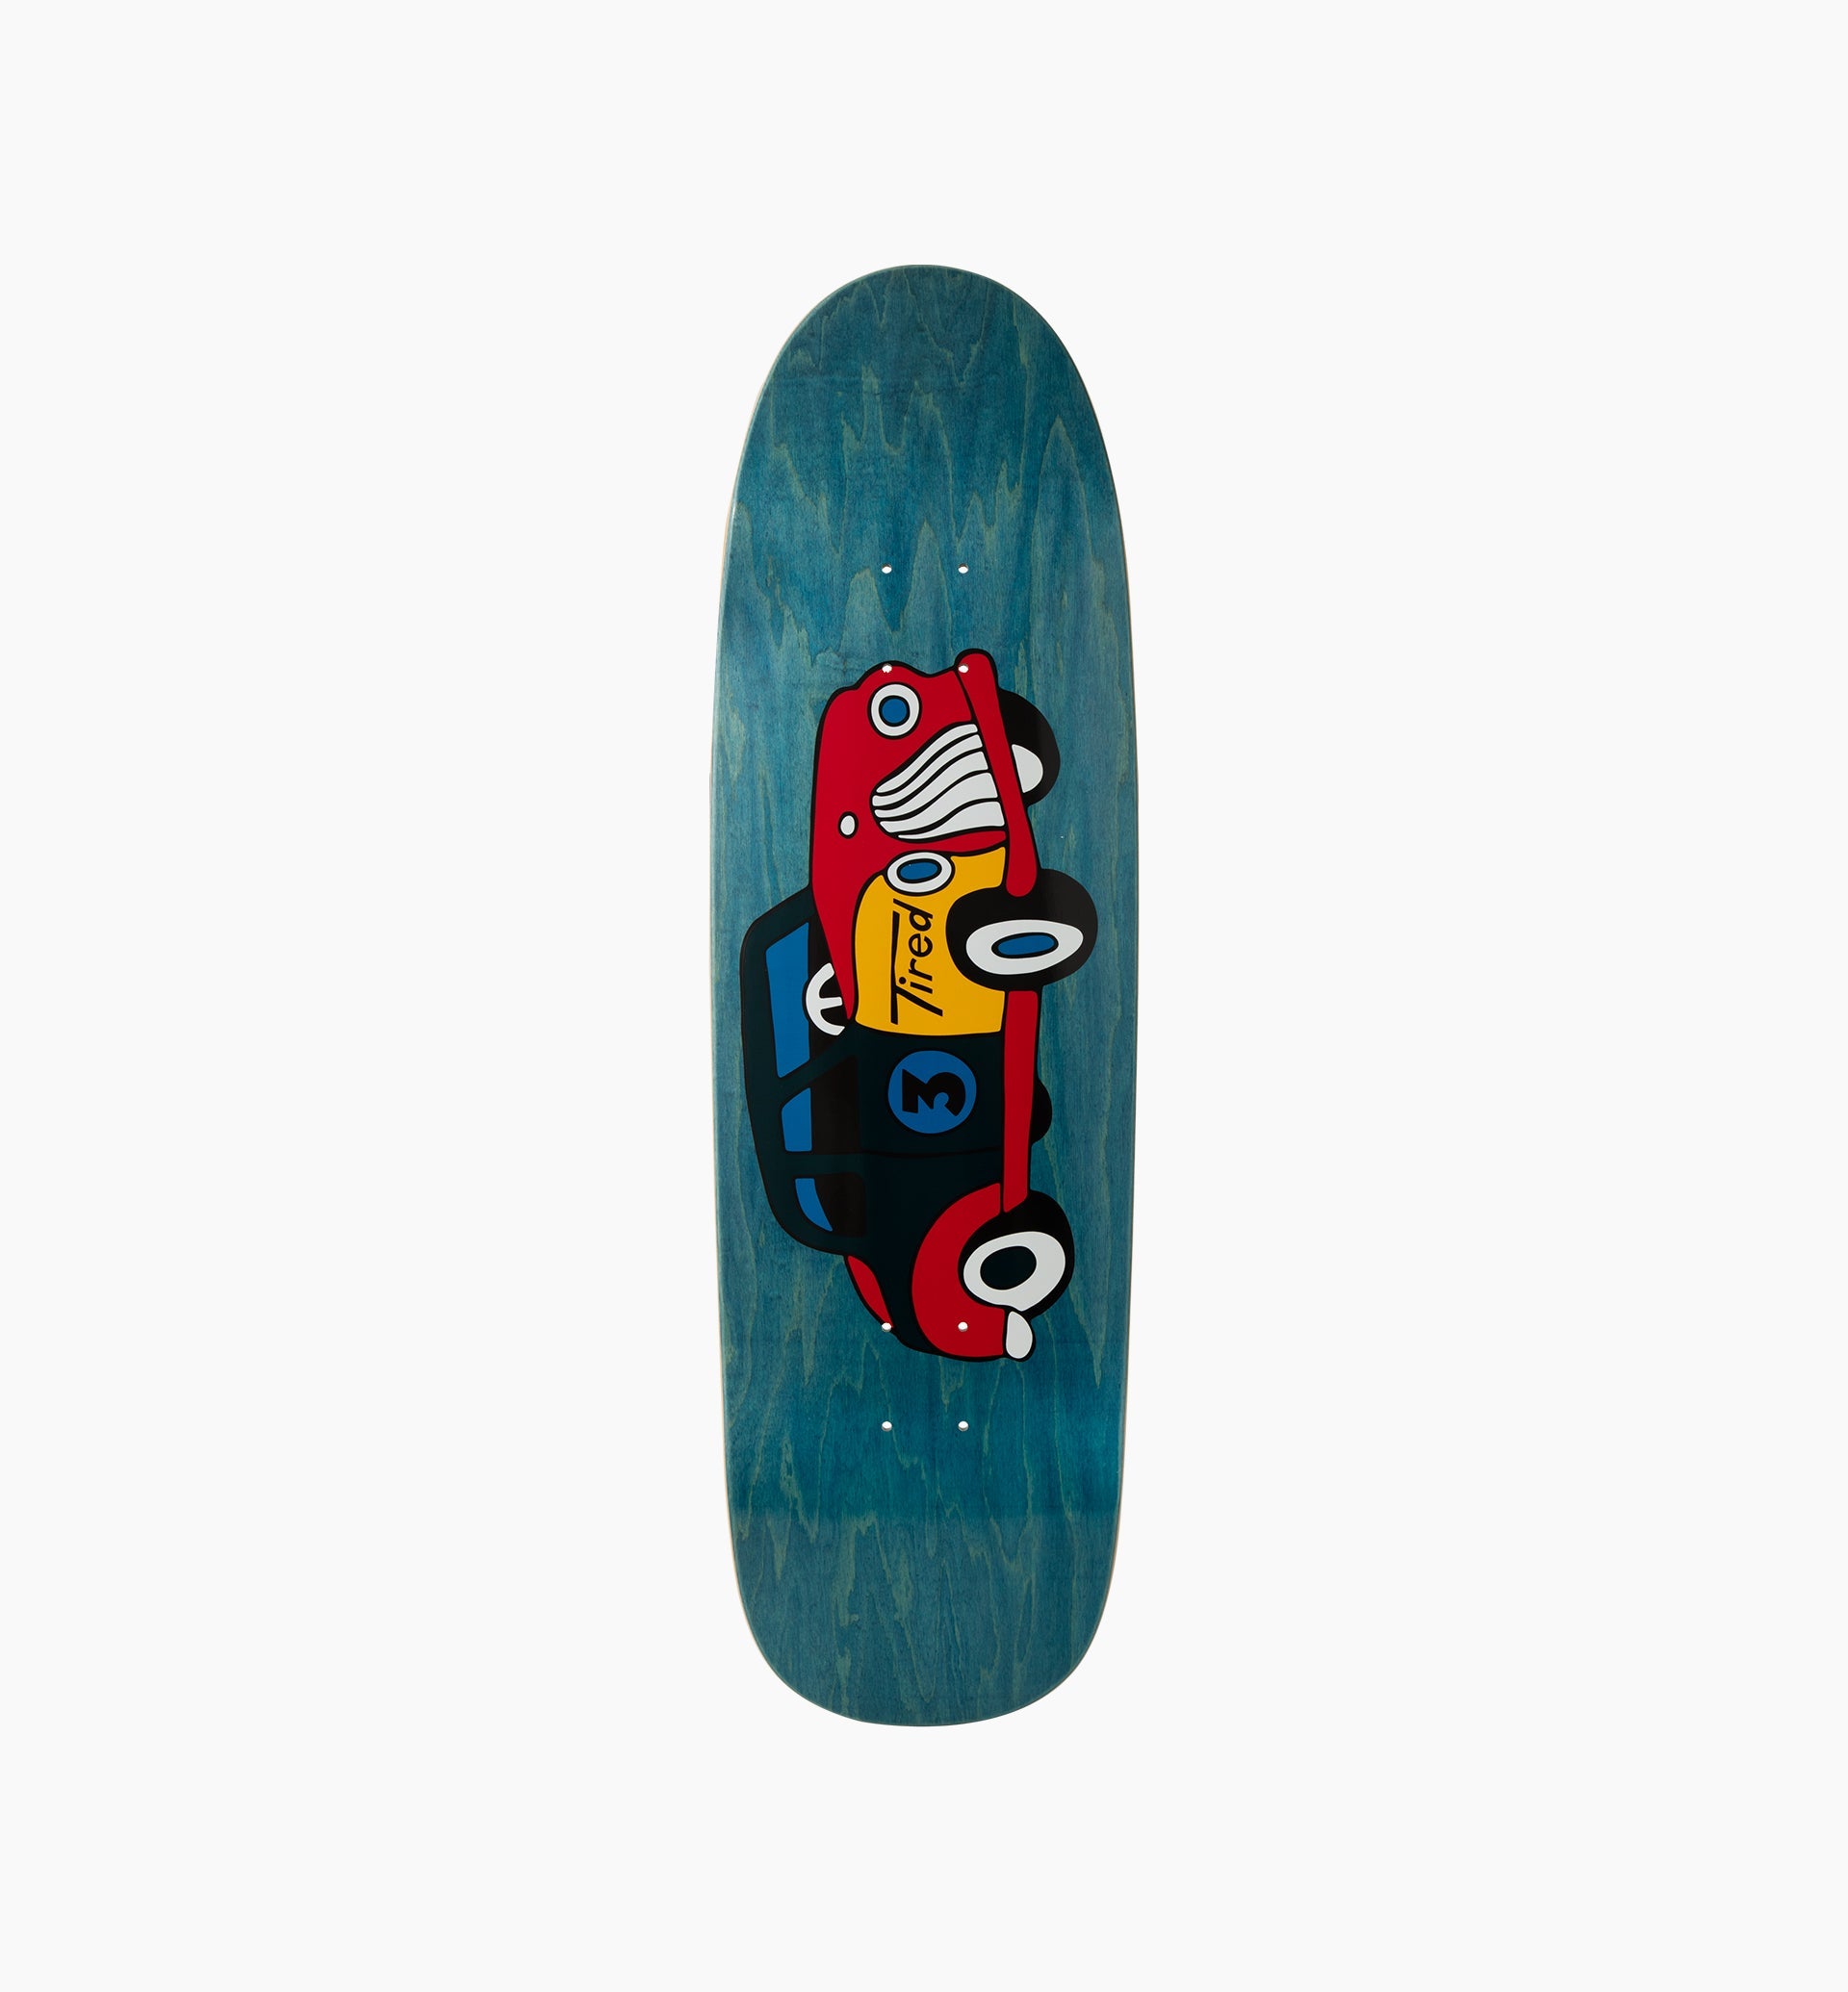 Parra - old mobil skateboard deck